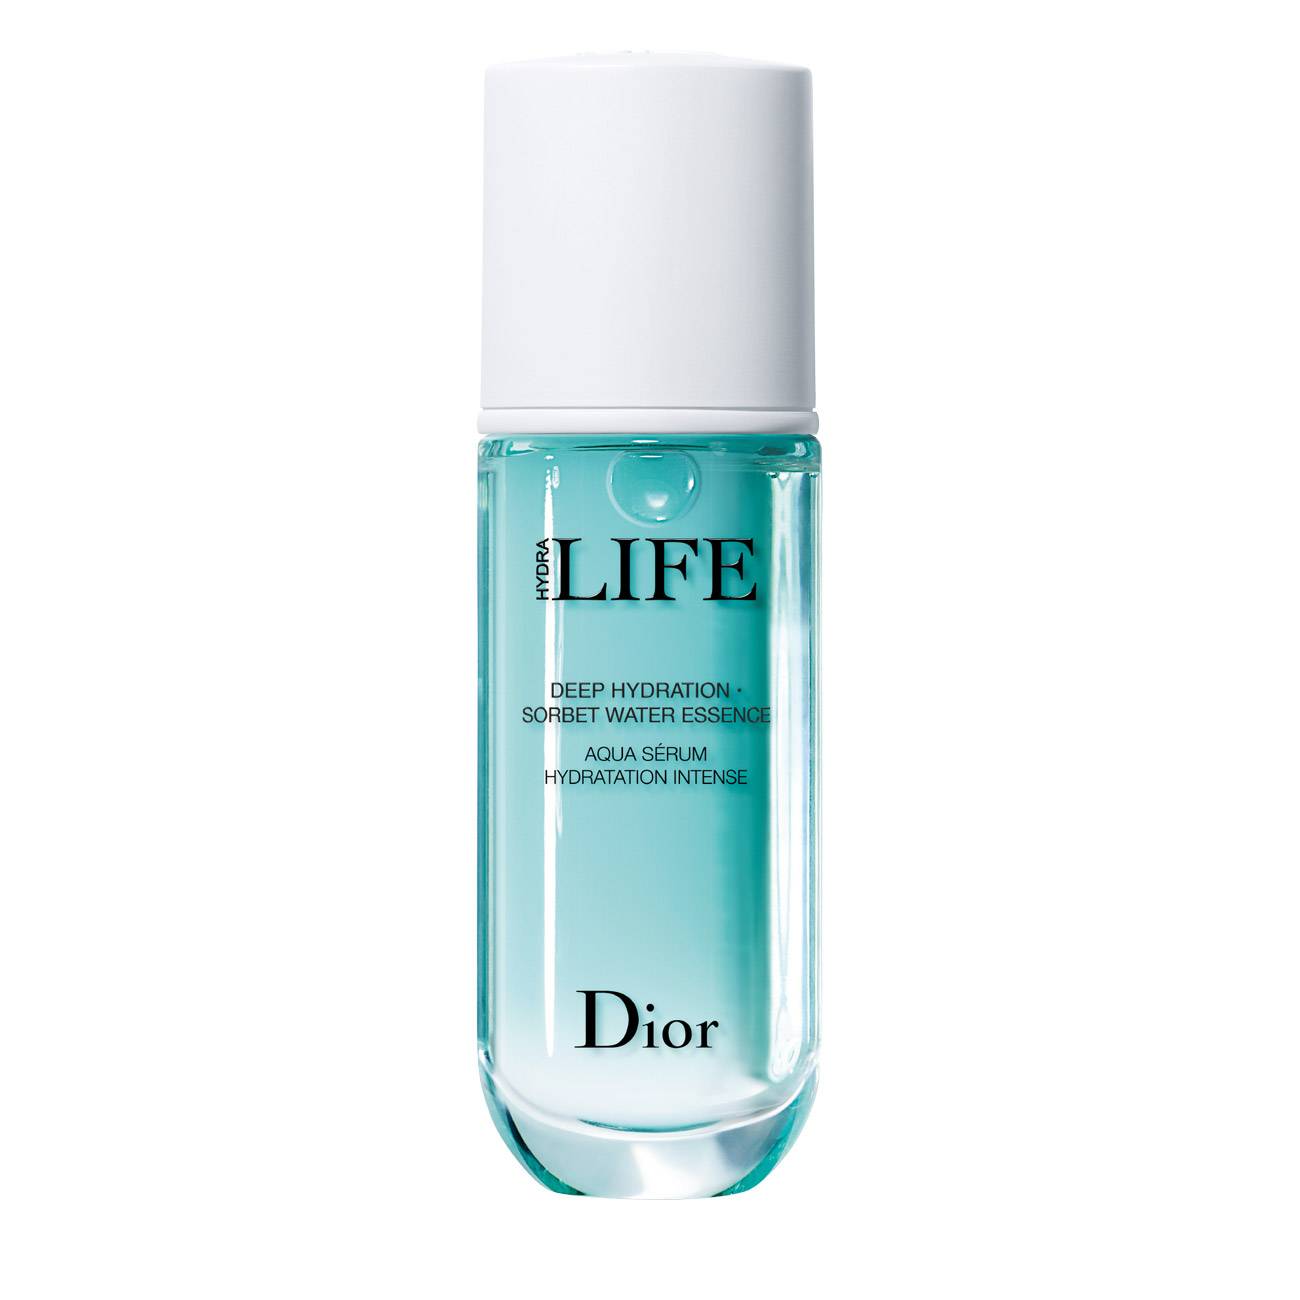 Masca tratament Dior LIFE SORBET WATER ESSENCE 40ml cu comanda online